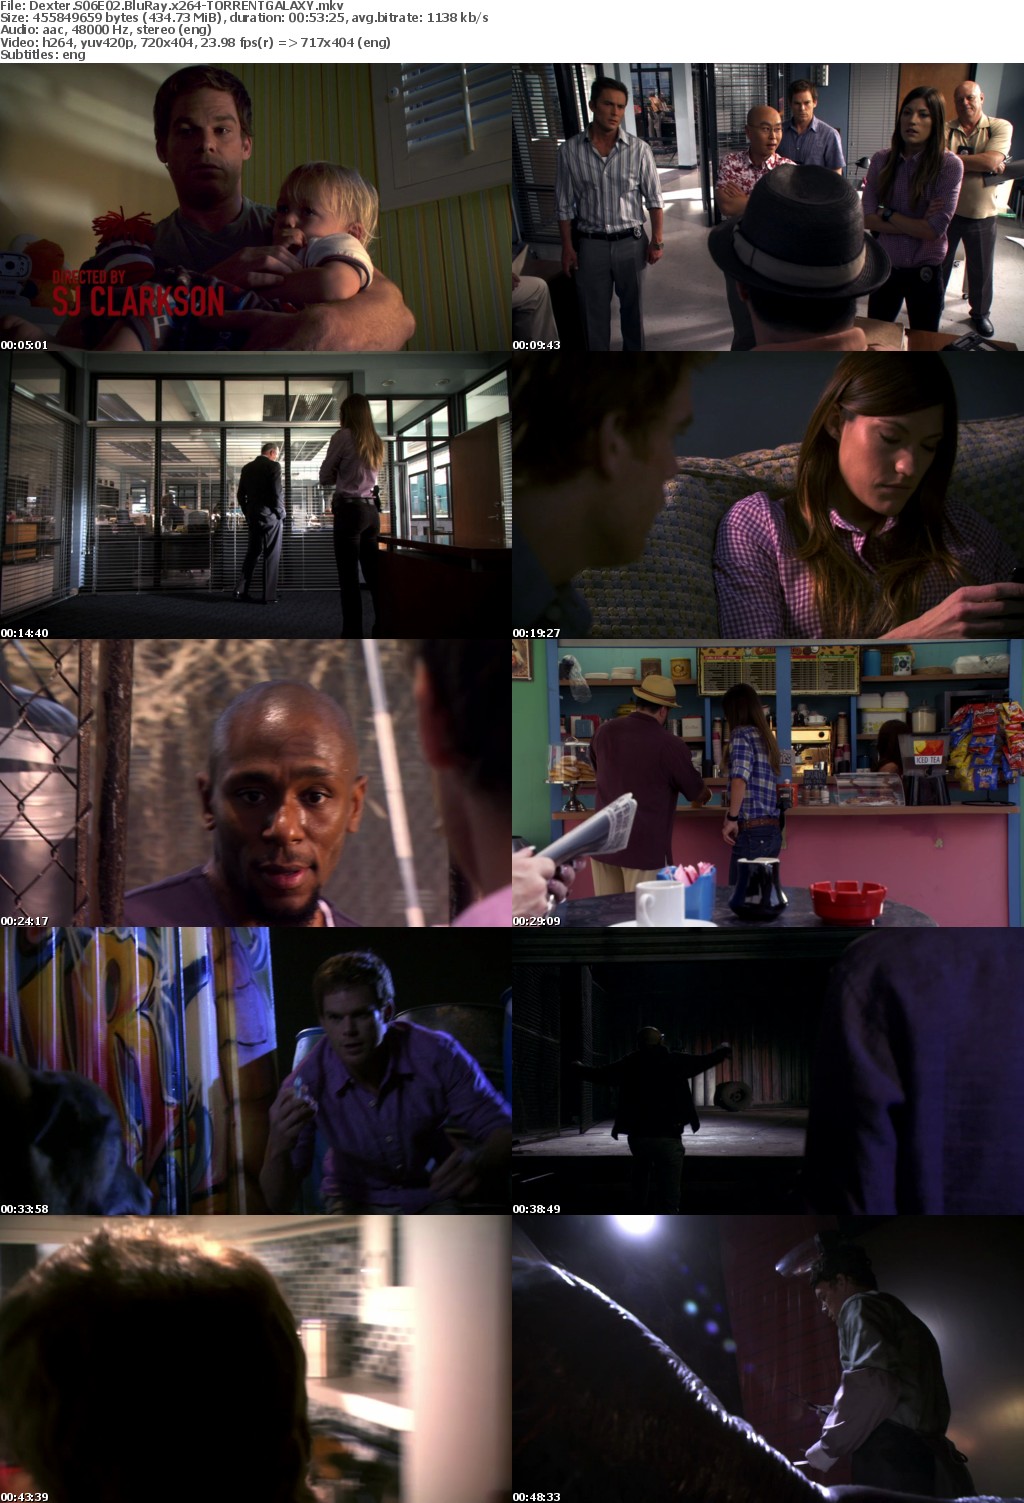 Dexter S06E02 BluRay x264-GALAXY